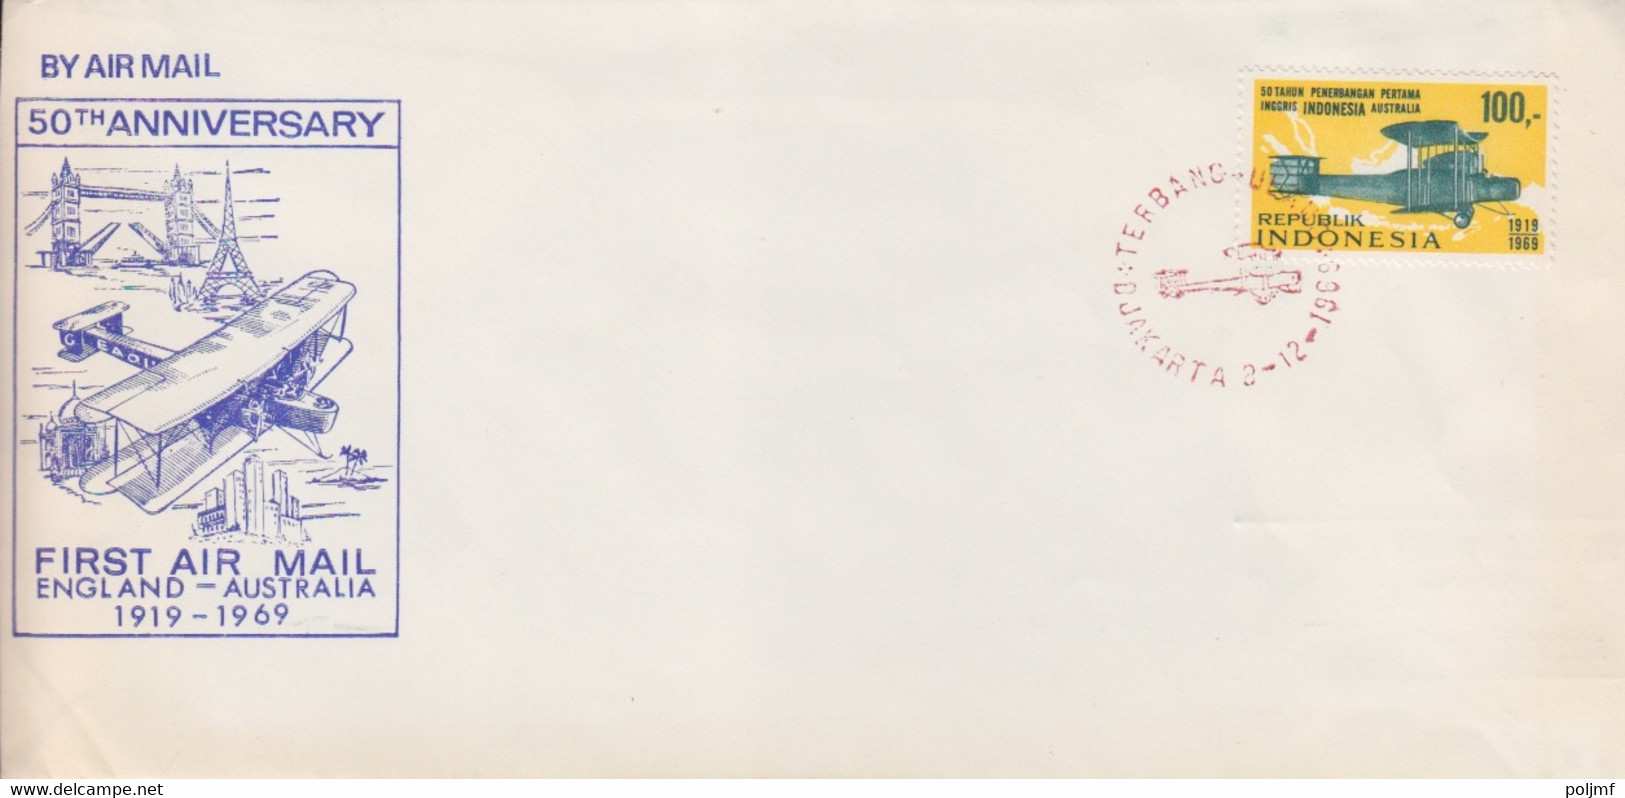 18 lettres 50° anniversaire du 1° vol Angleterre-Australie en 1919, Obl. en Dec 69 aux différentes étapes